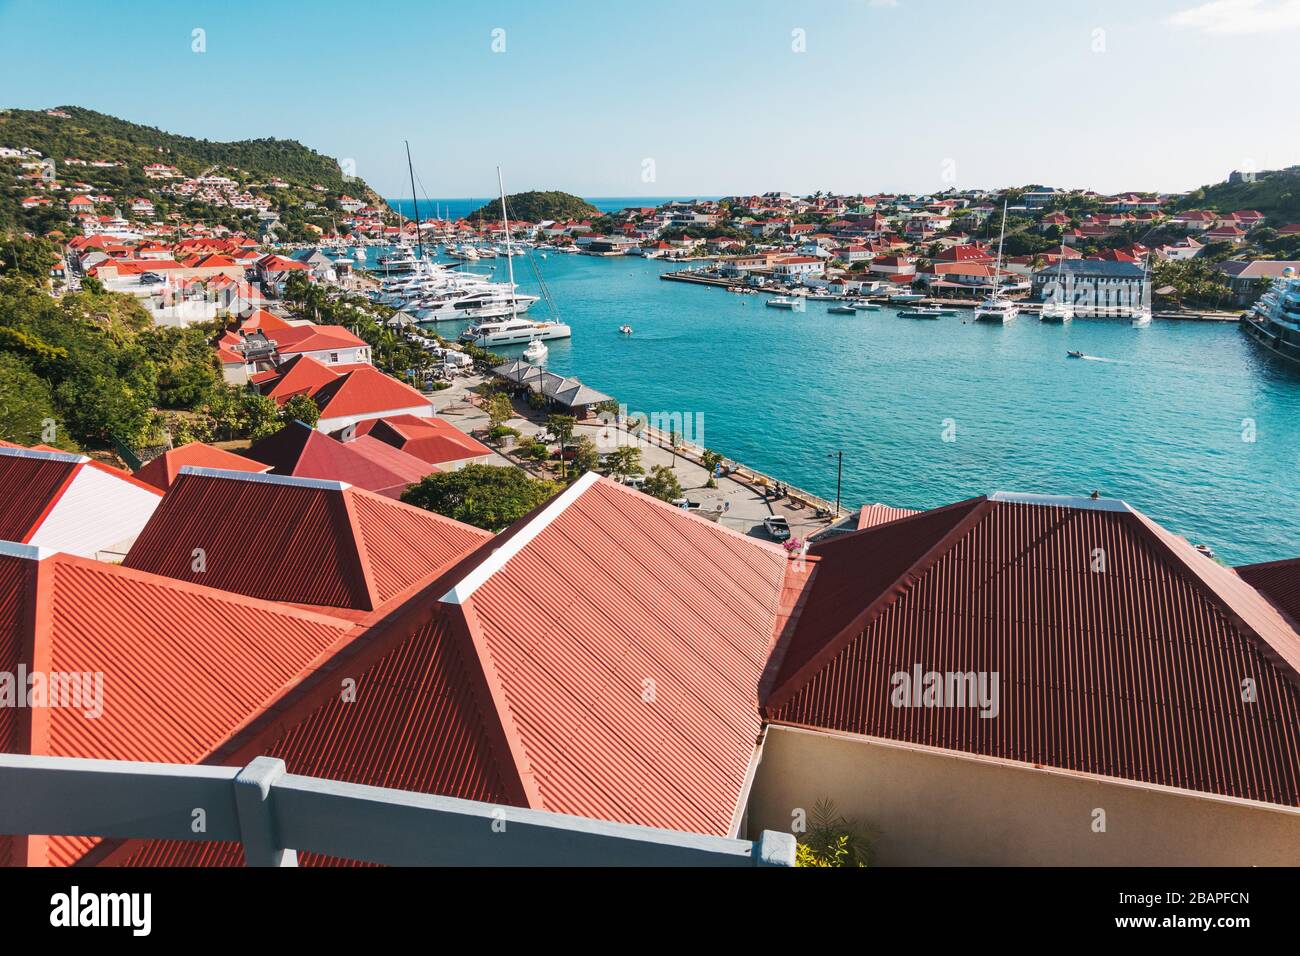 Les toits rouges distincts des maisons et des boutiques de la ville portuaire de Gustavia, capitale de Saint Barthélemy, bien entretenue Banque D'Images